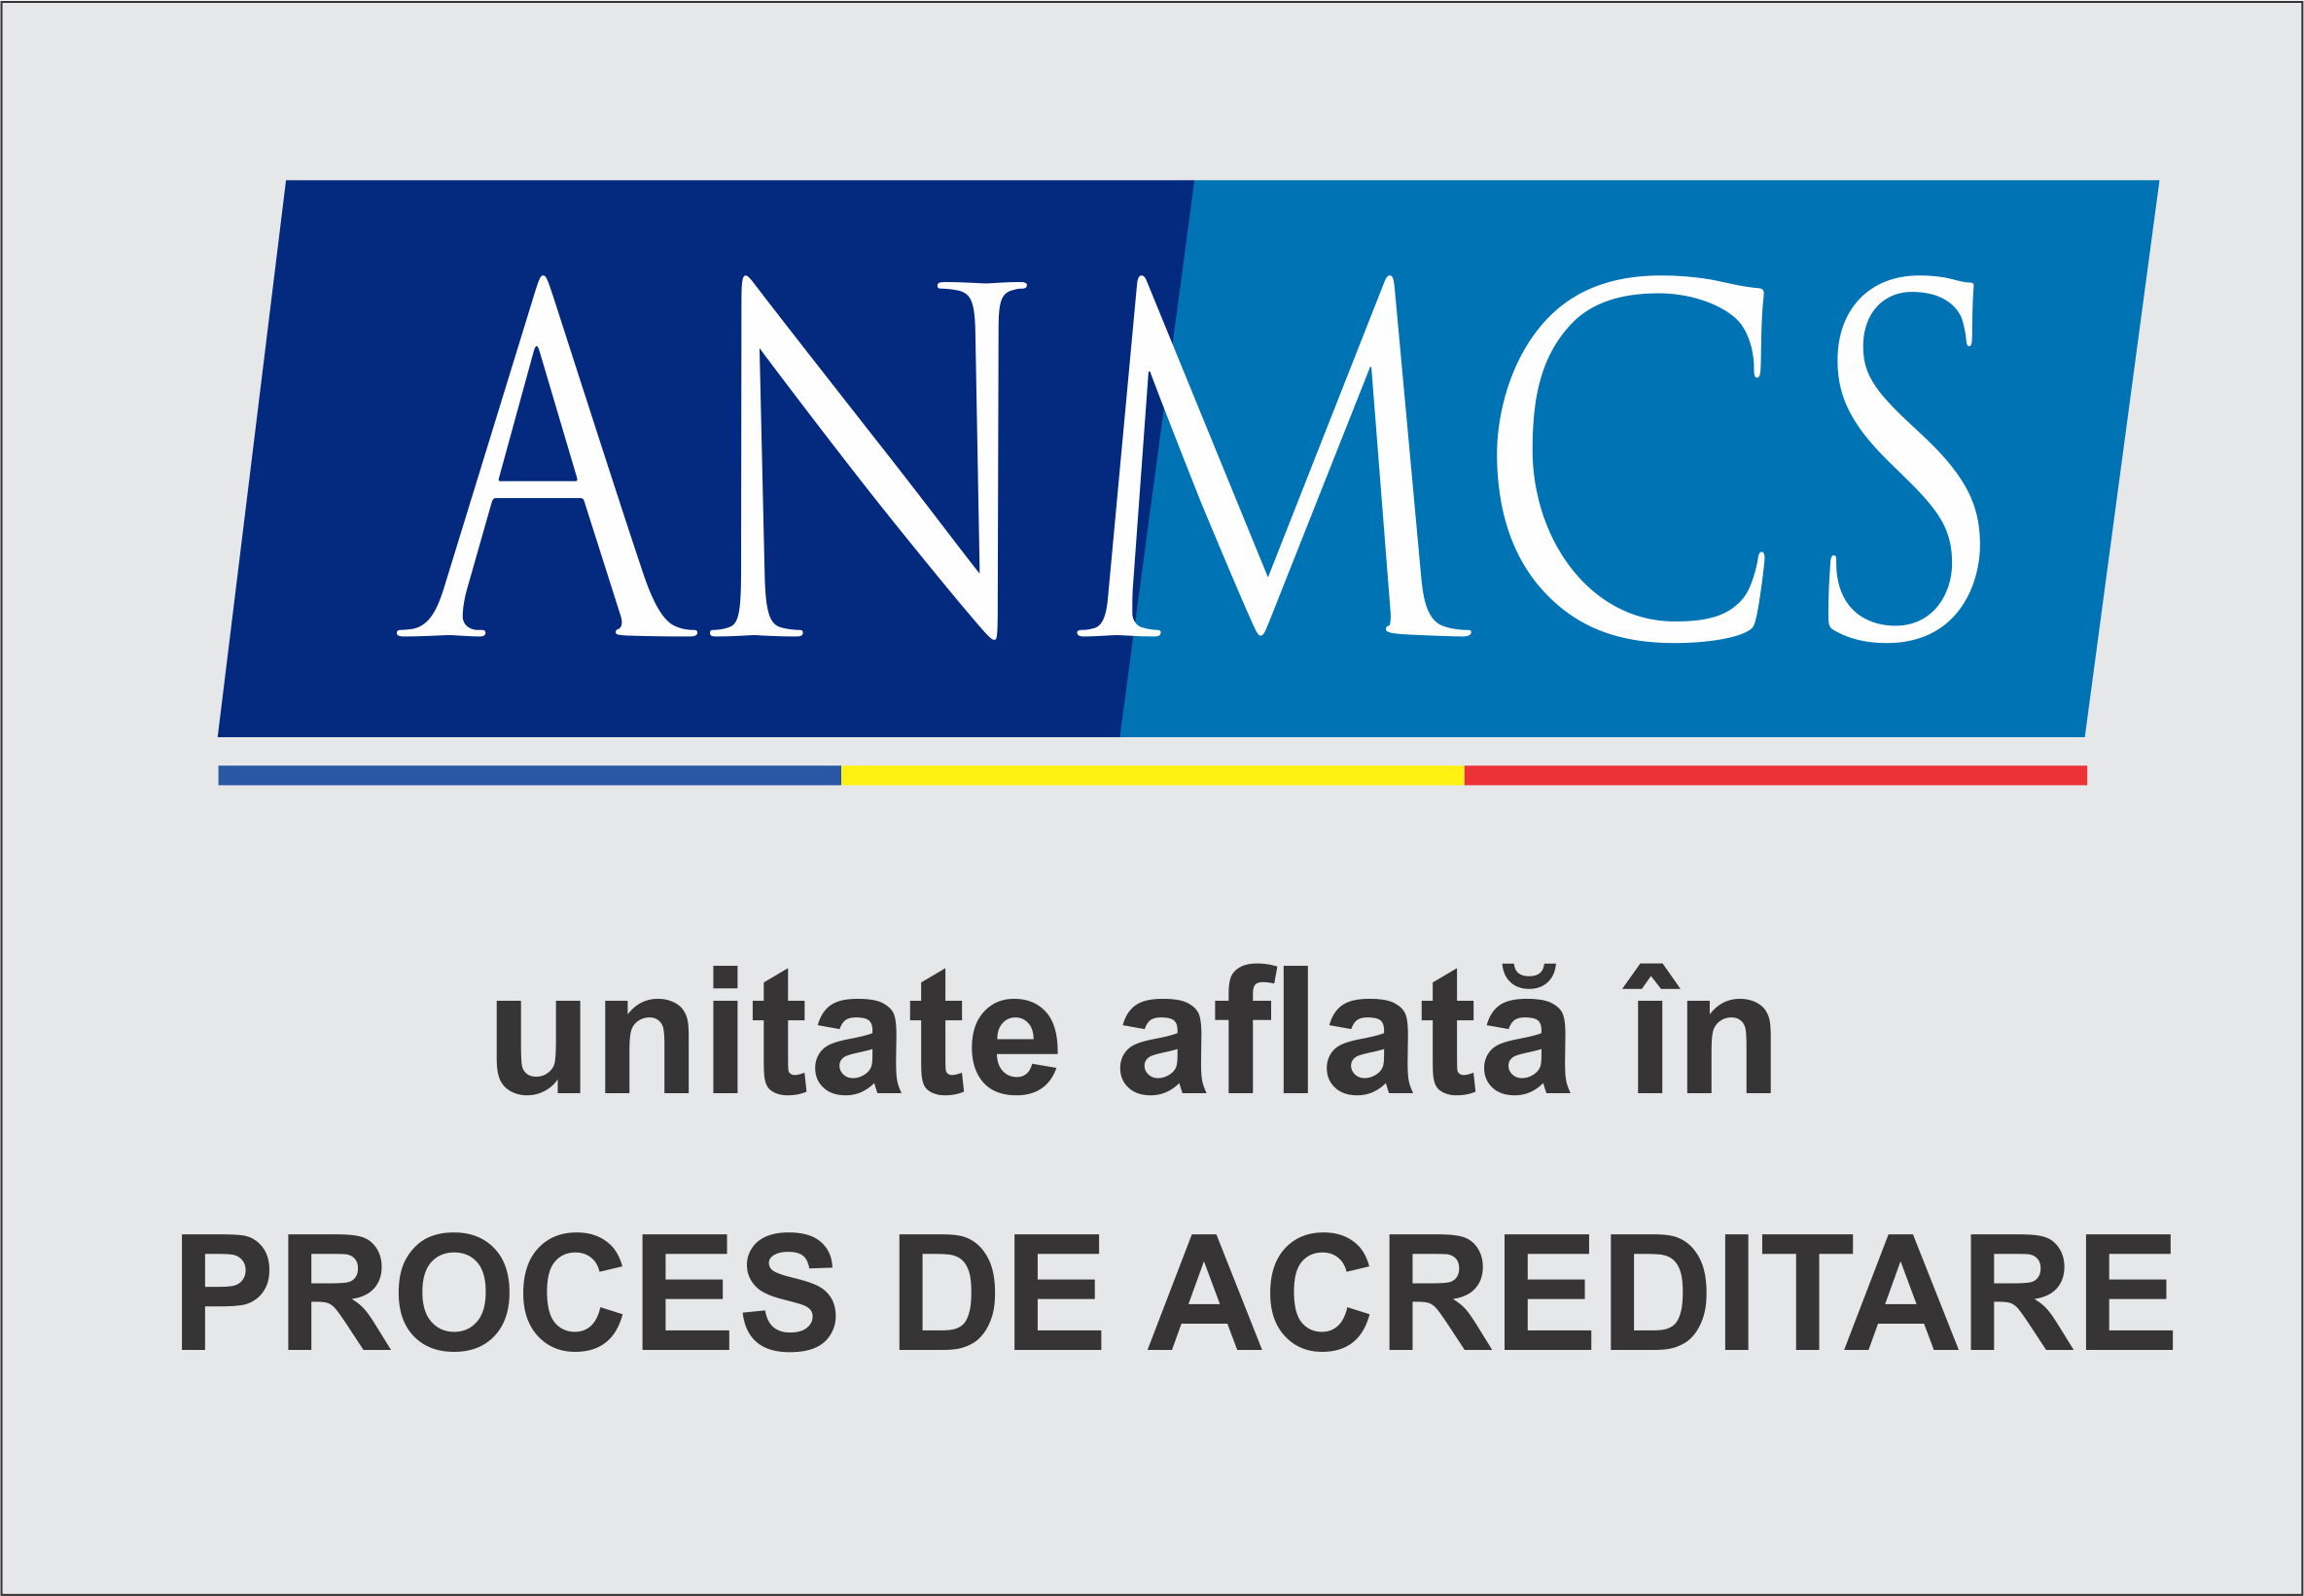 ANMCS - Unitate in proces de acreditare